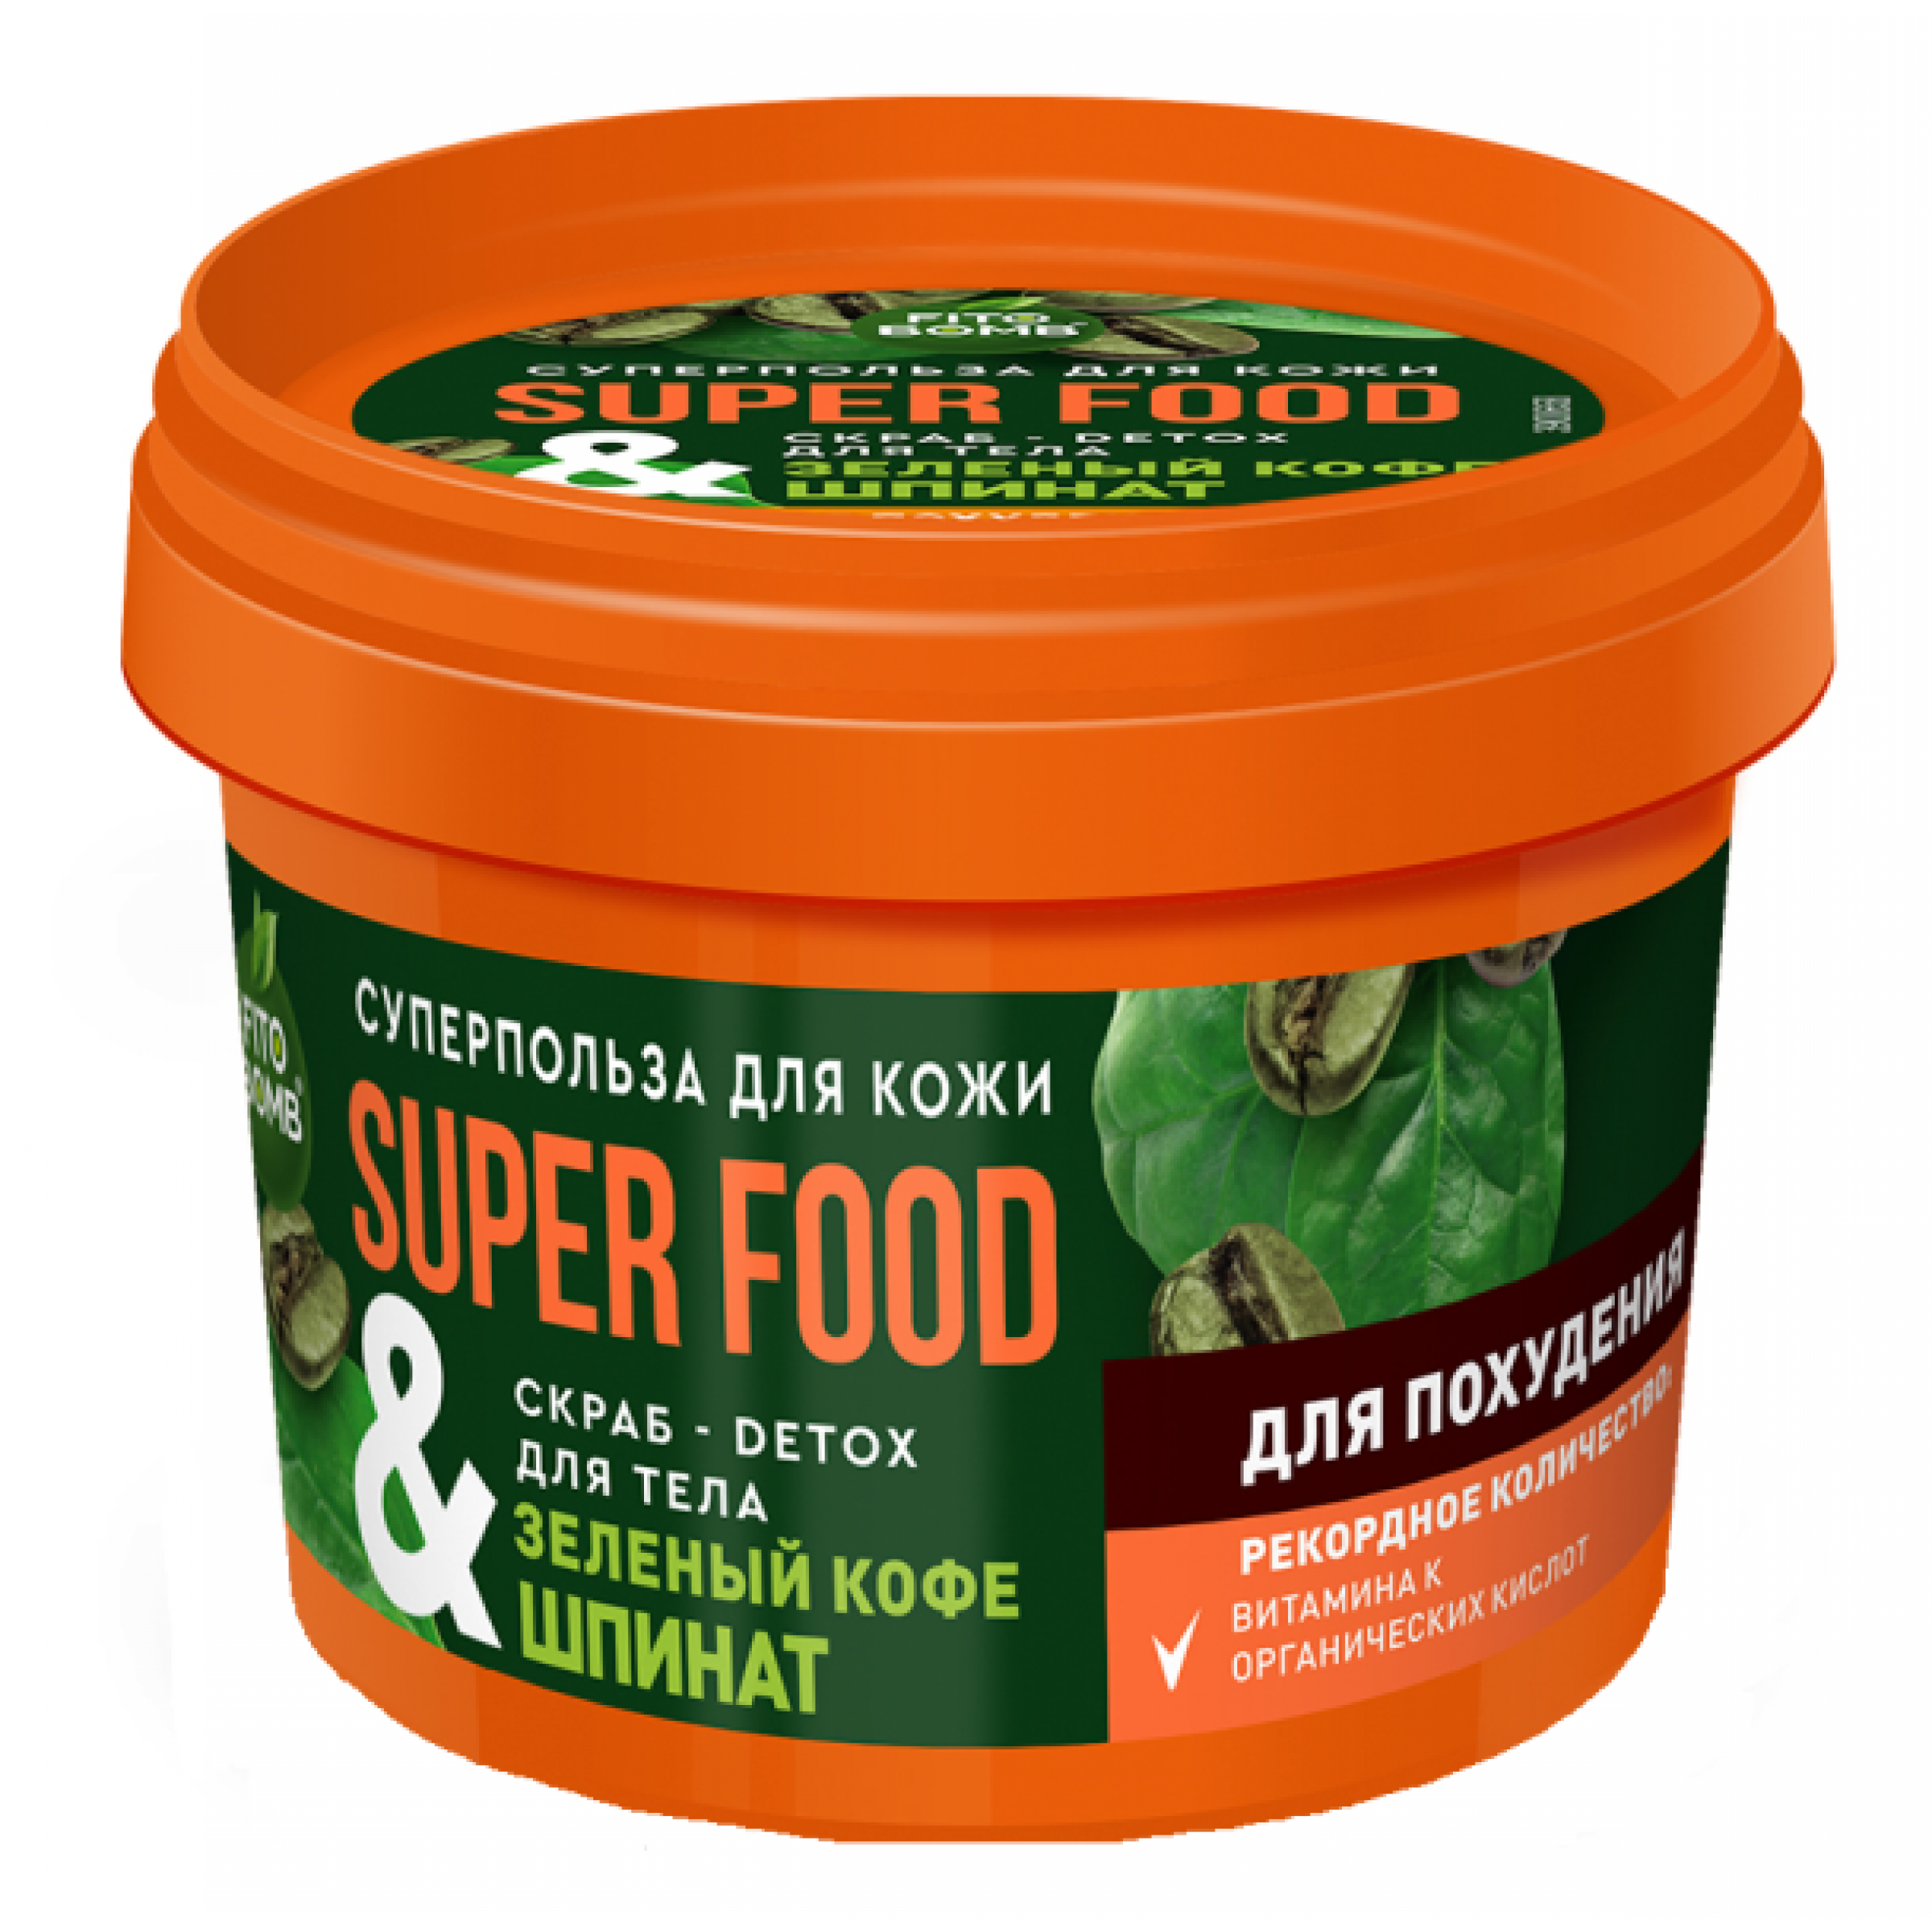 Скраб-detox для тела ФИТОкосметик Super food Зеленый кофе и шпинат 100 мл